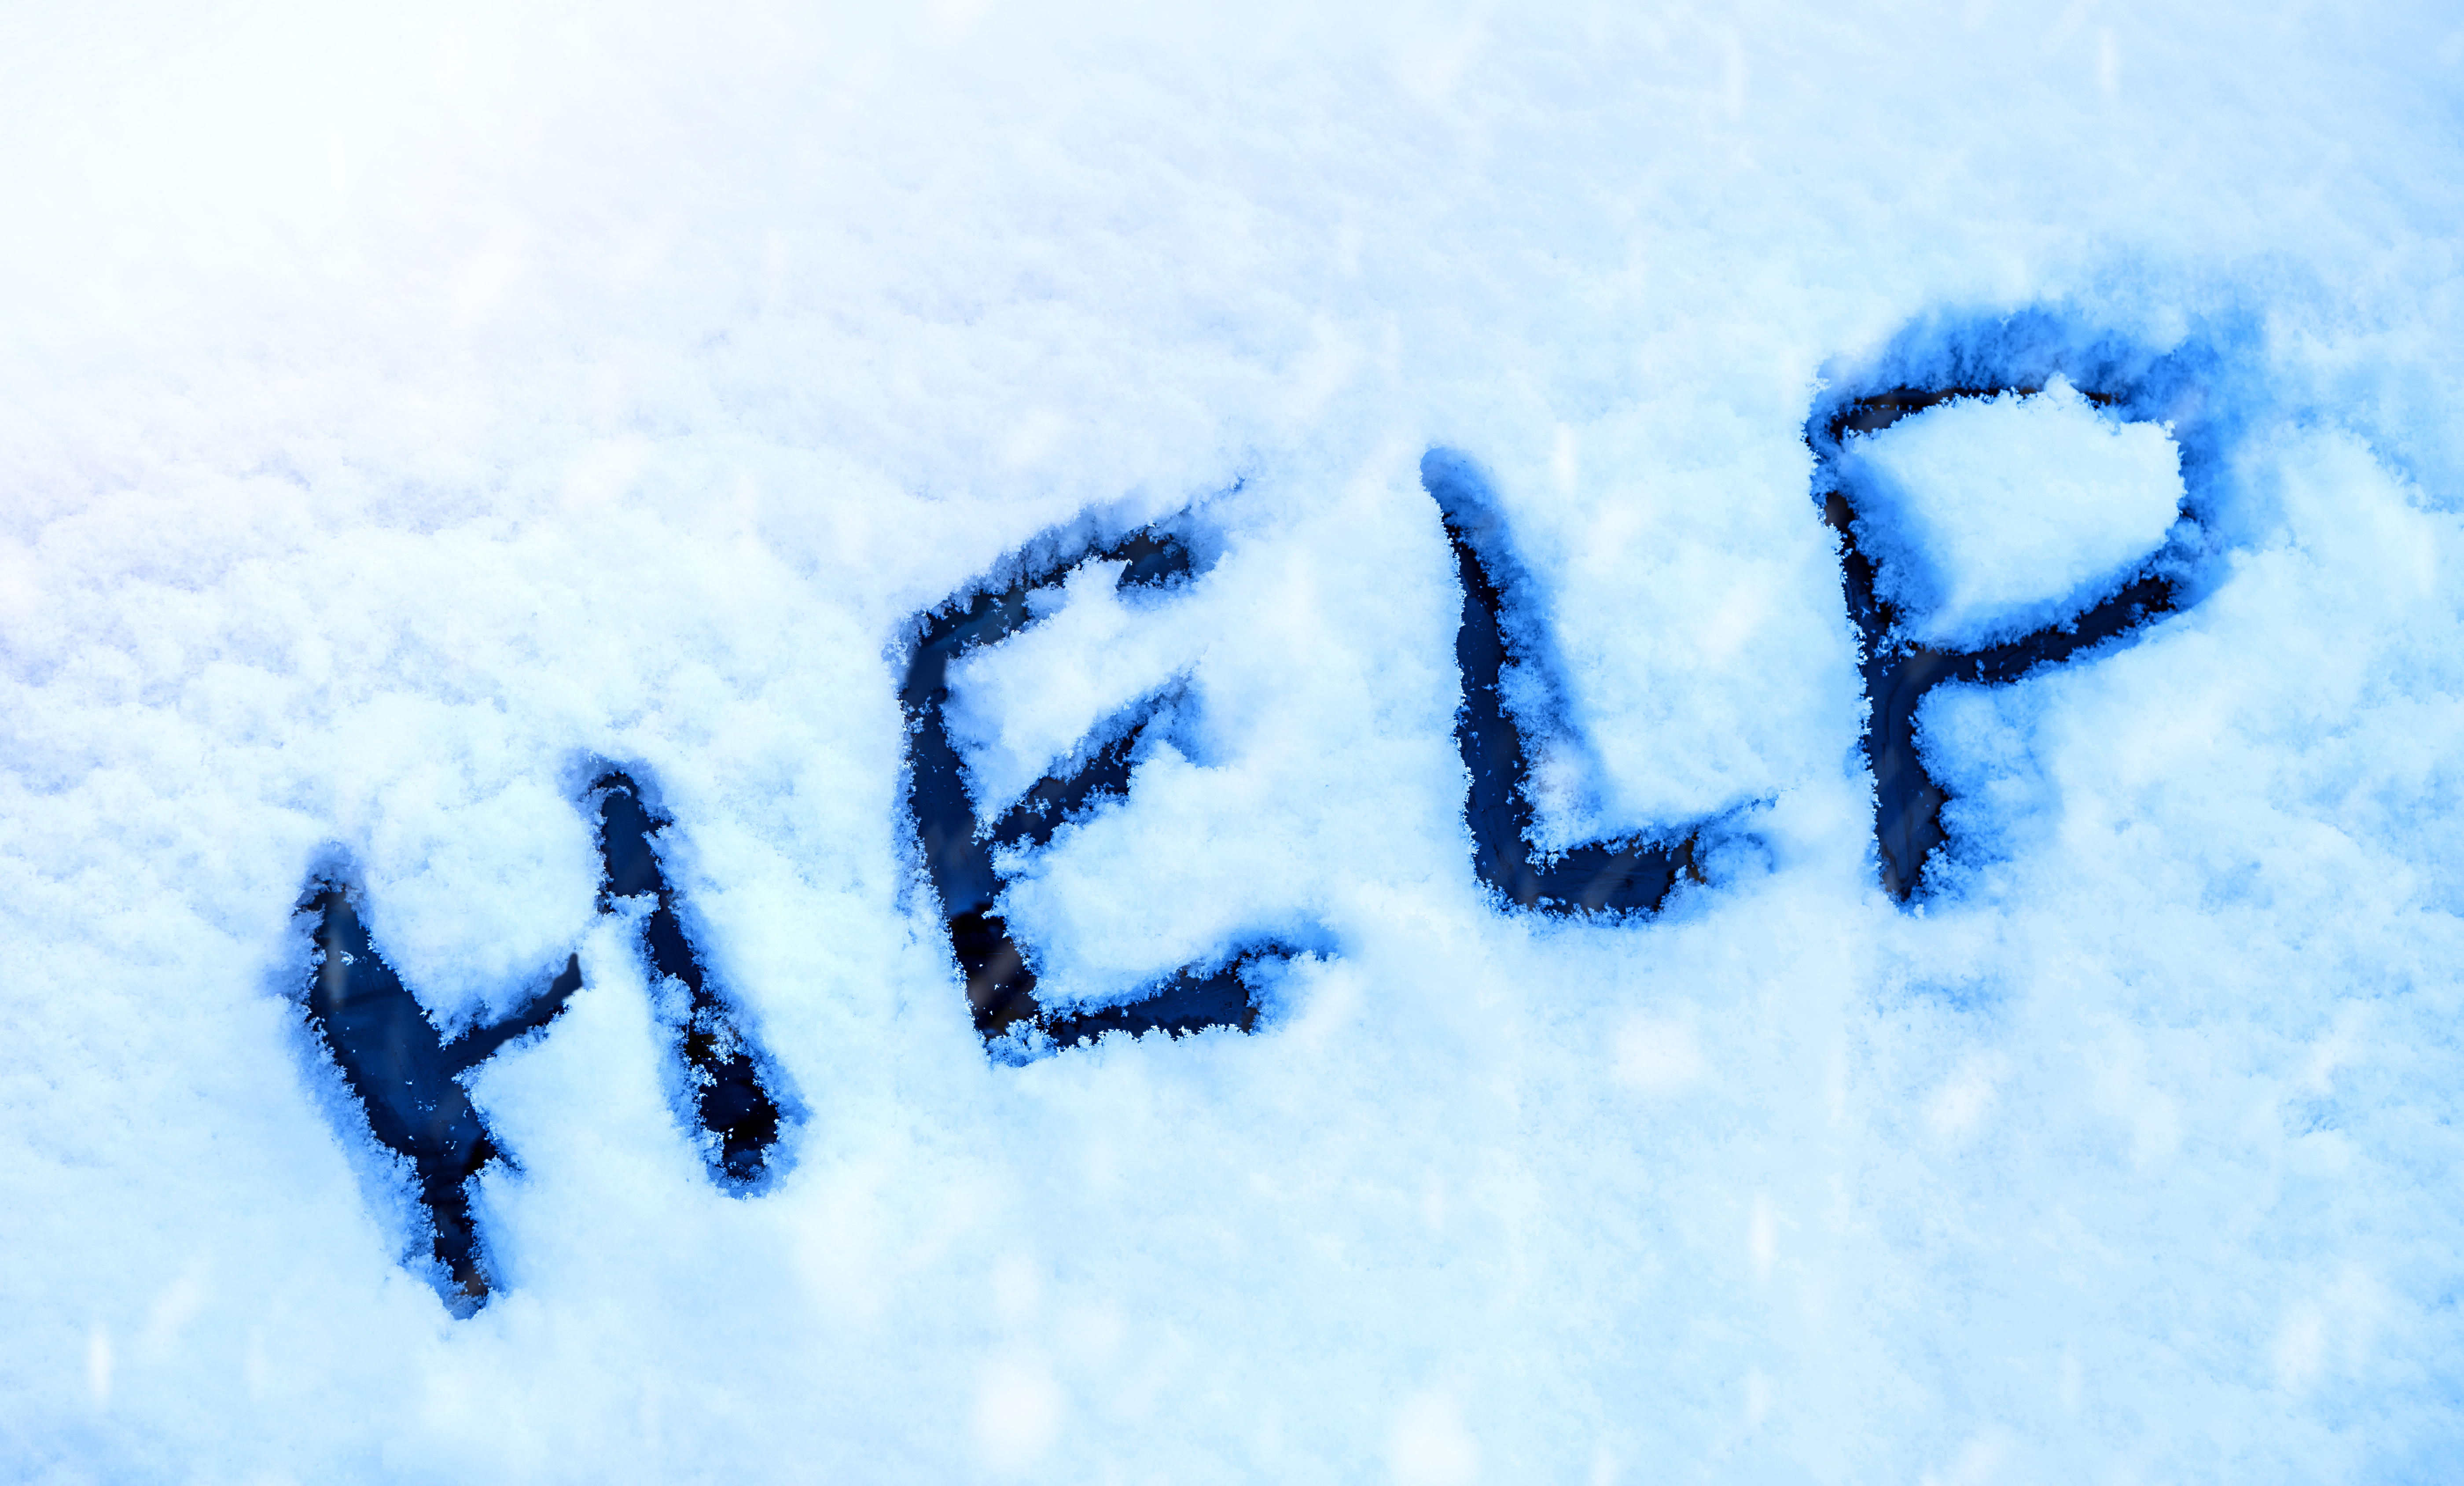 Word Help, escrito sobre una nieve. | Fuente: Shutterstock